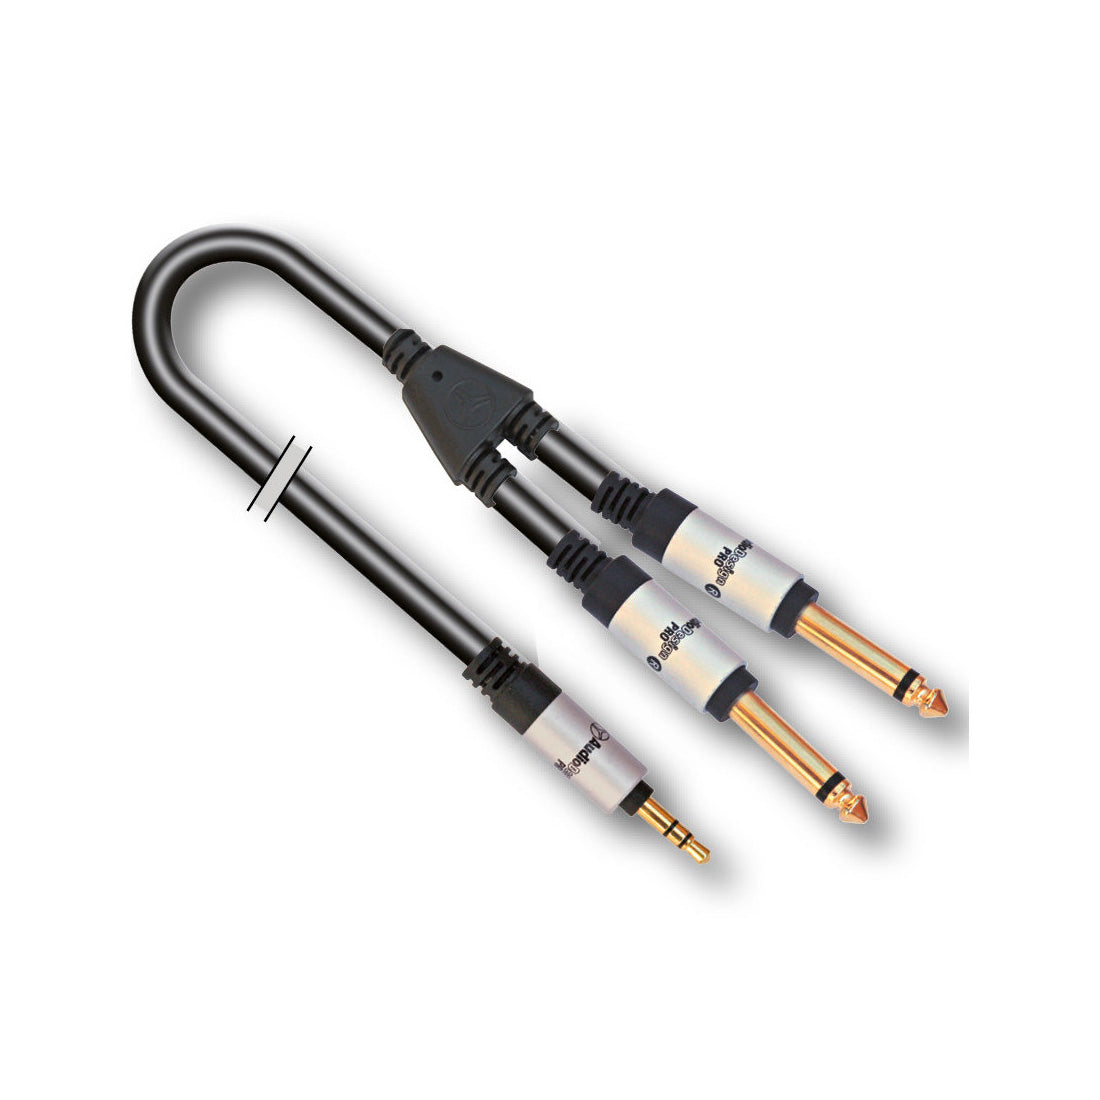 Audiodesign Cavo adattatore X PRO 1, cavo audio con Jack 3.5mm e St 2 Jack 6,3mm Mono, 6 mt